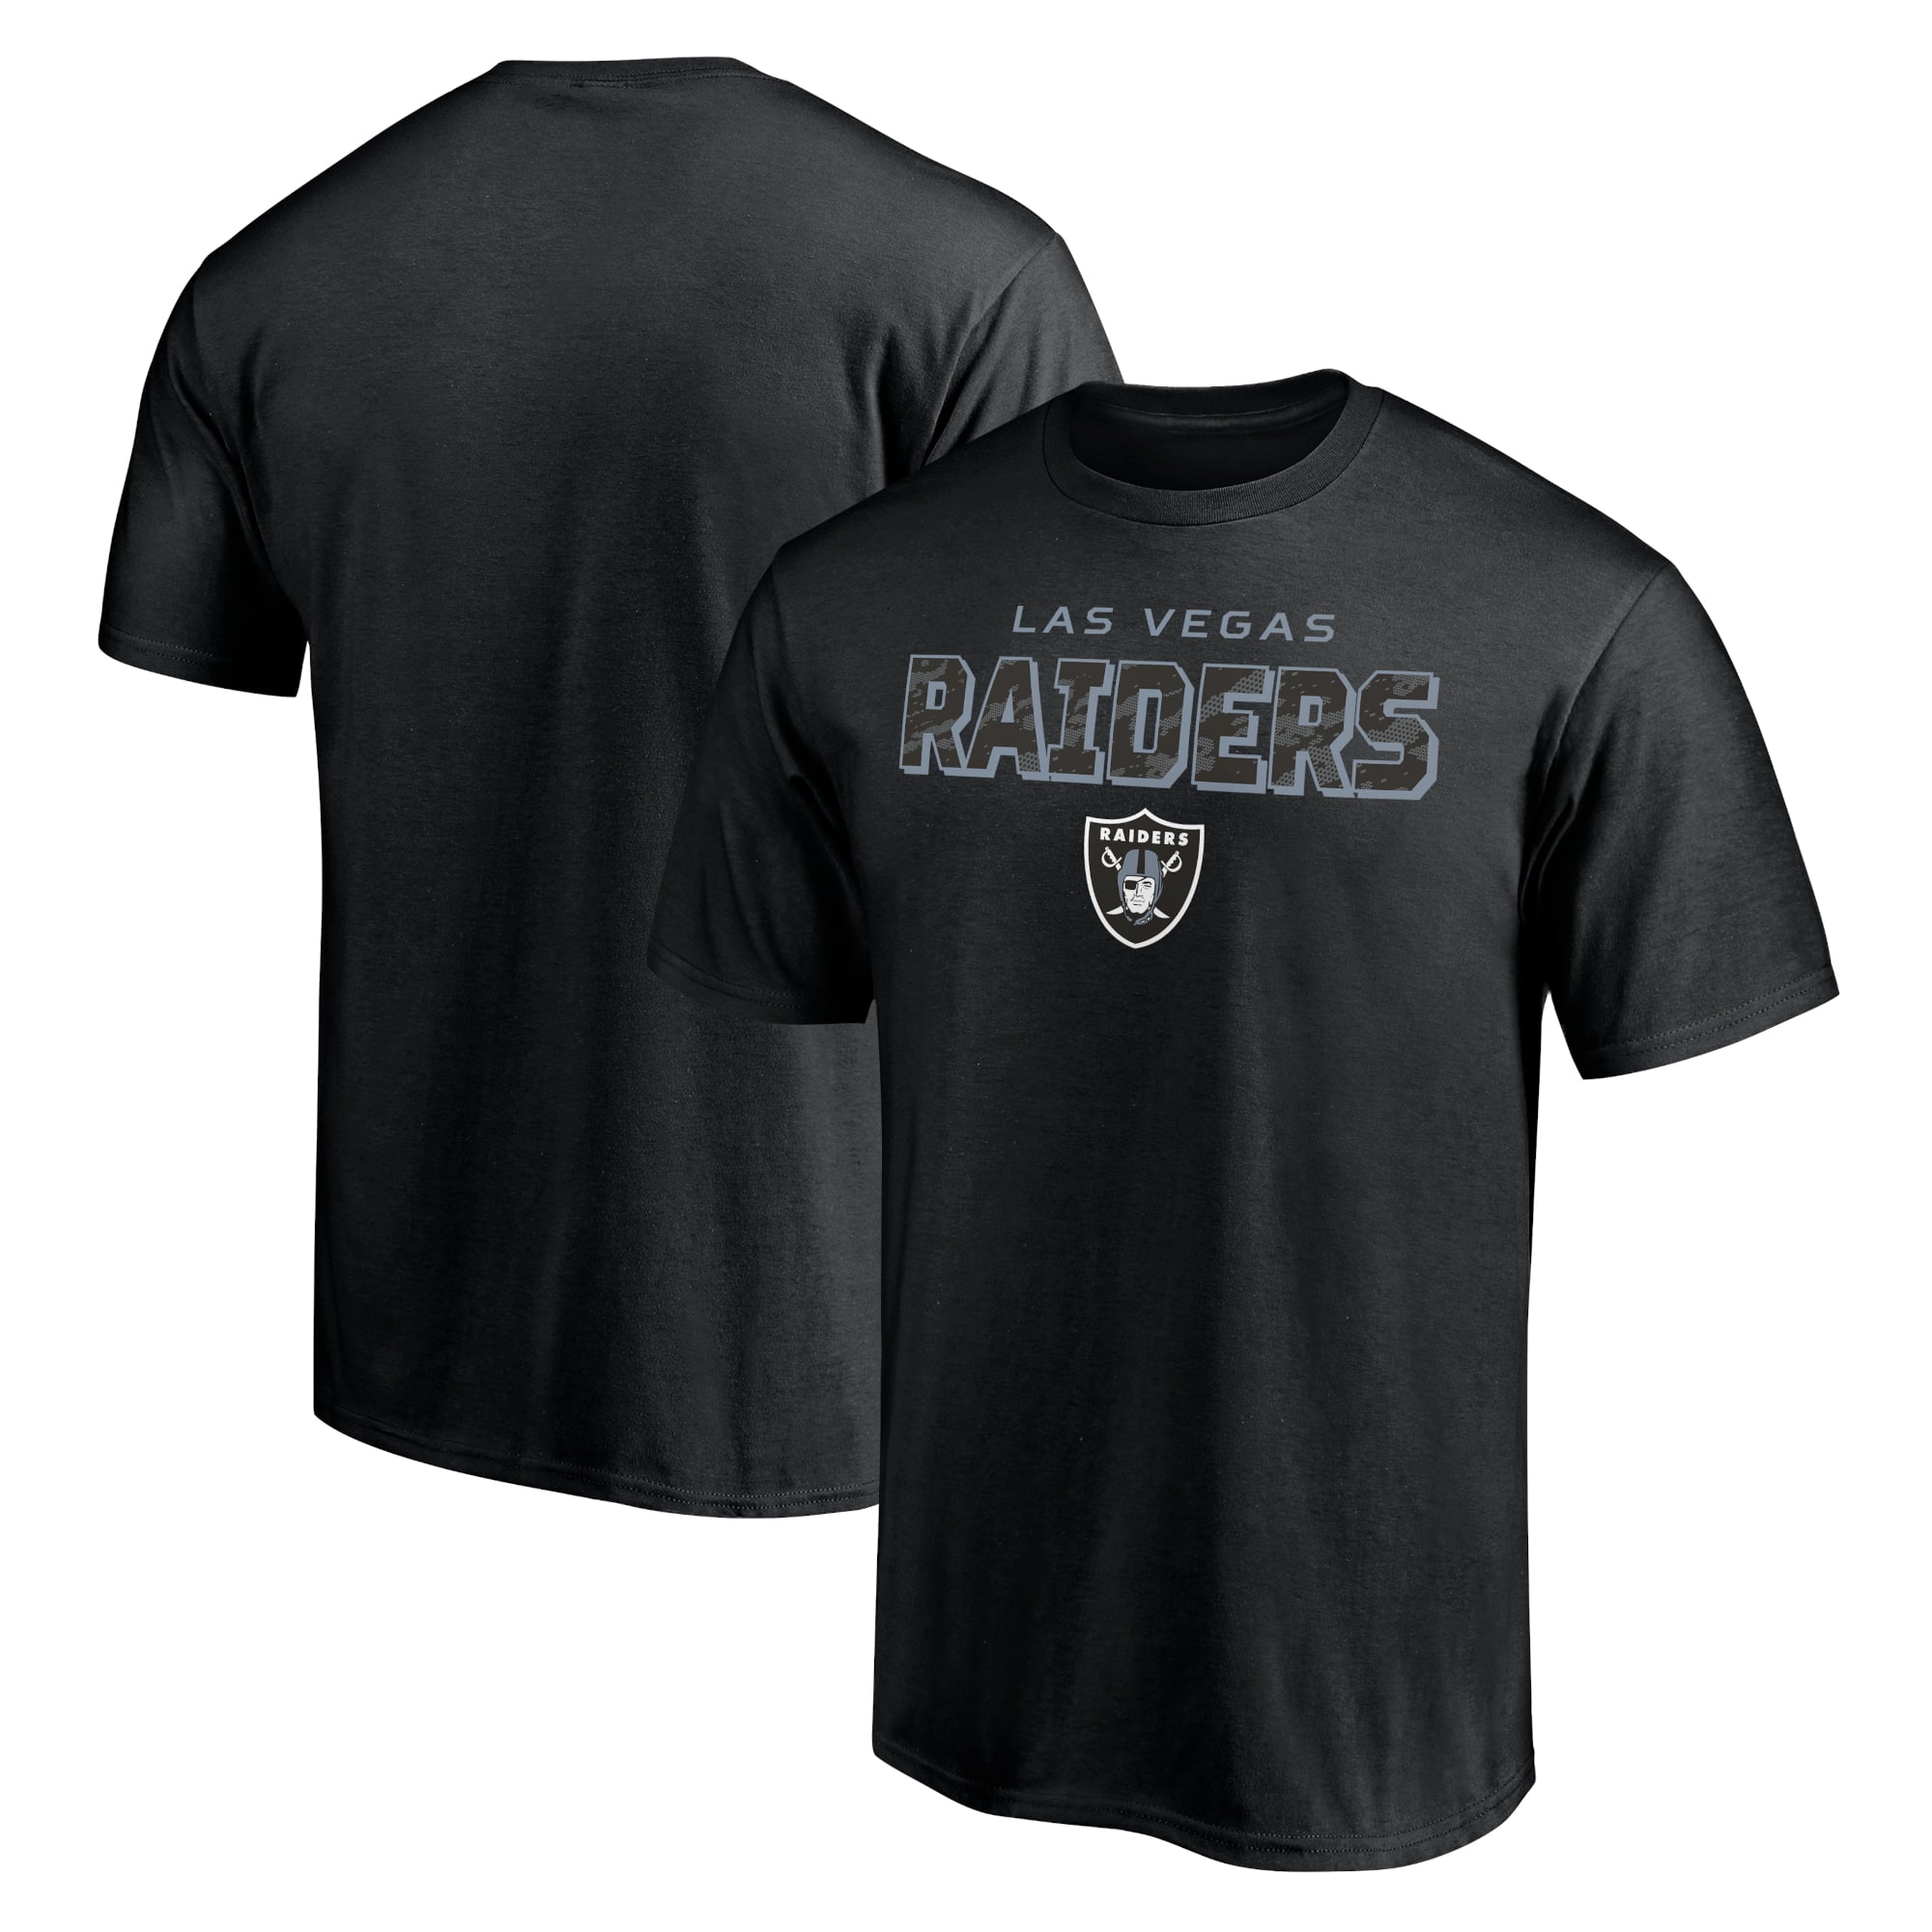 Las Vegas Raiders T-Shirts - Walmart.com